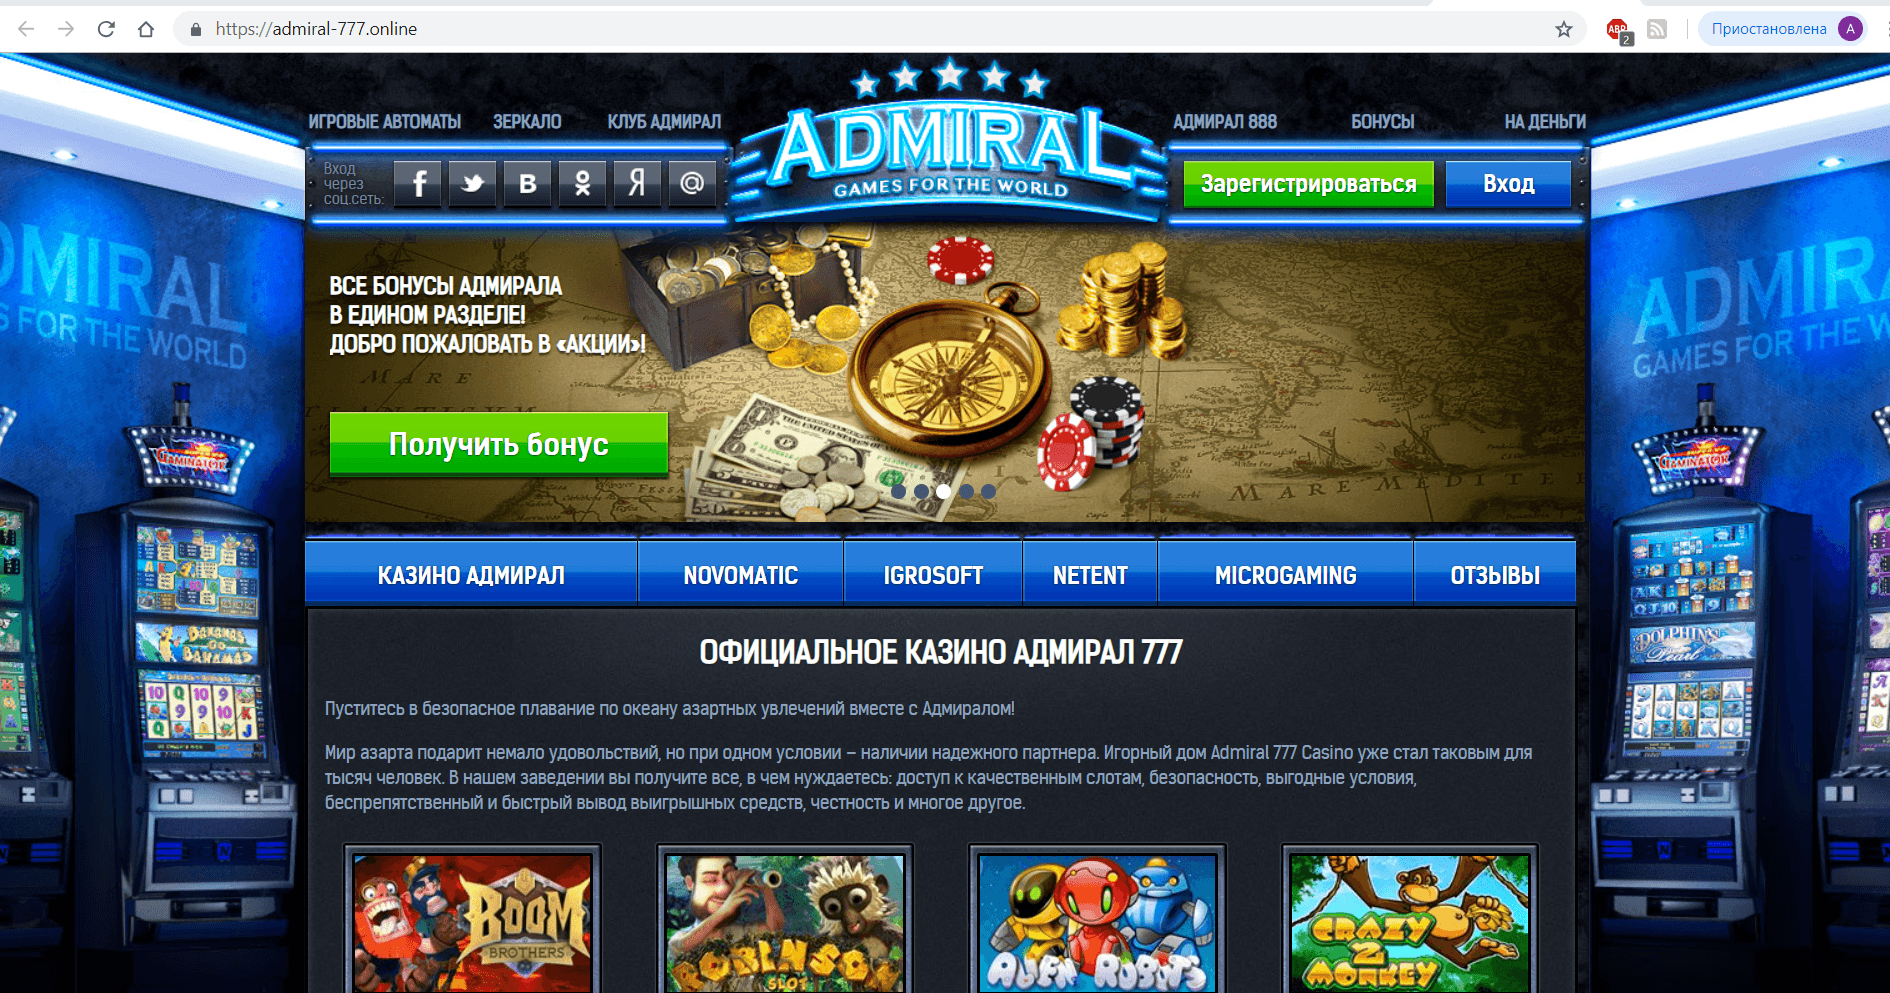 Online casino welcome bonus no deposit